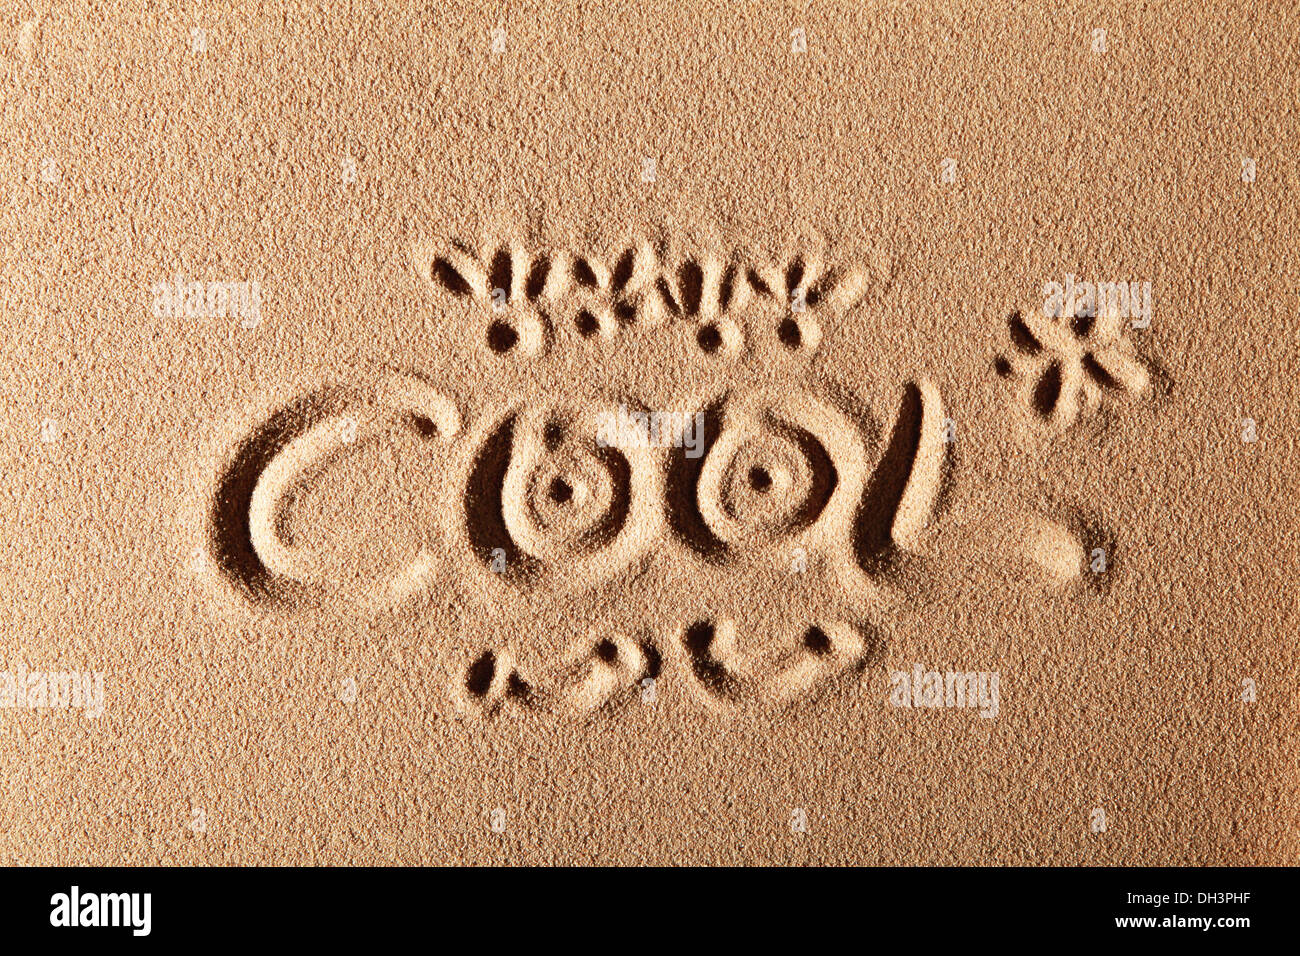 Das Wort COOL, in Sand gezeichnet Stockfoto